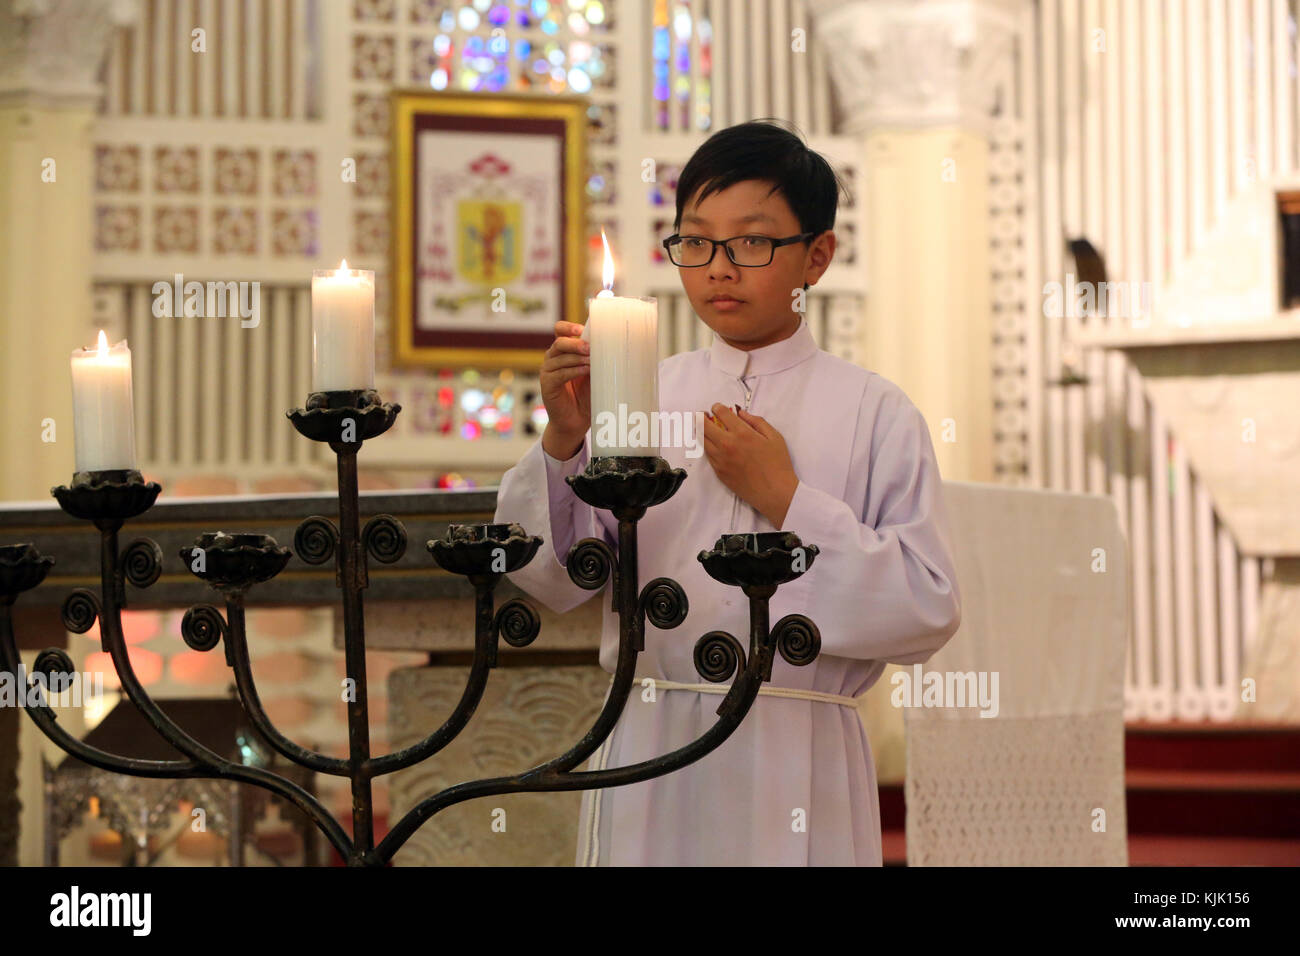 La cathédrale de Dalat. Messe catholique. Autel garçon avec bougies. l'église Dalat. Le Vietnam. Banque D'Images